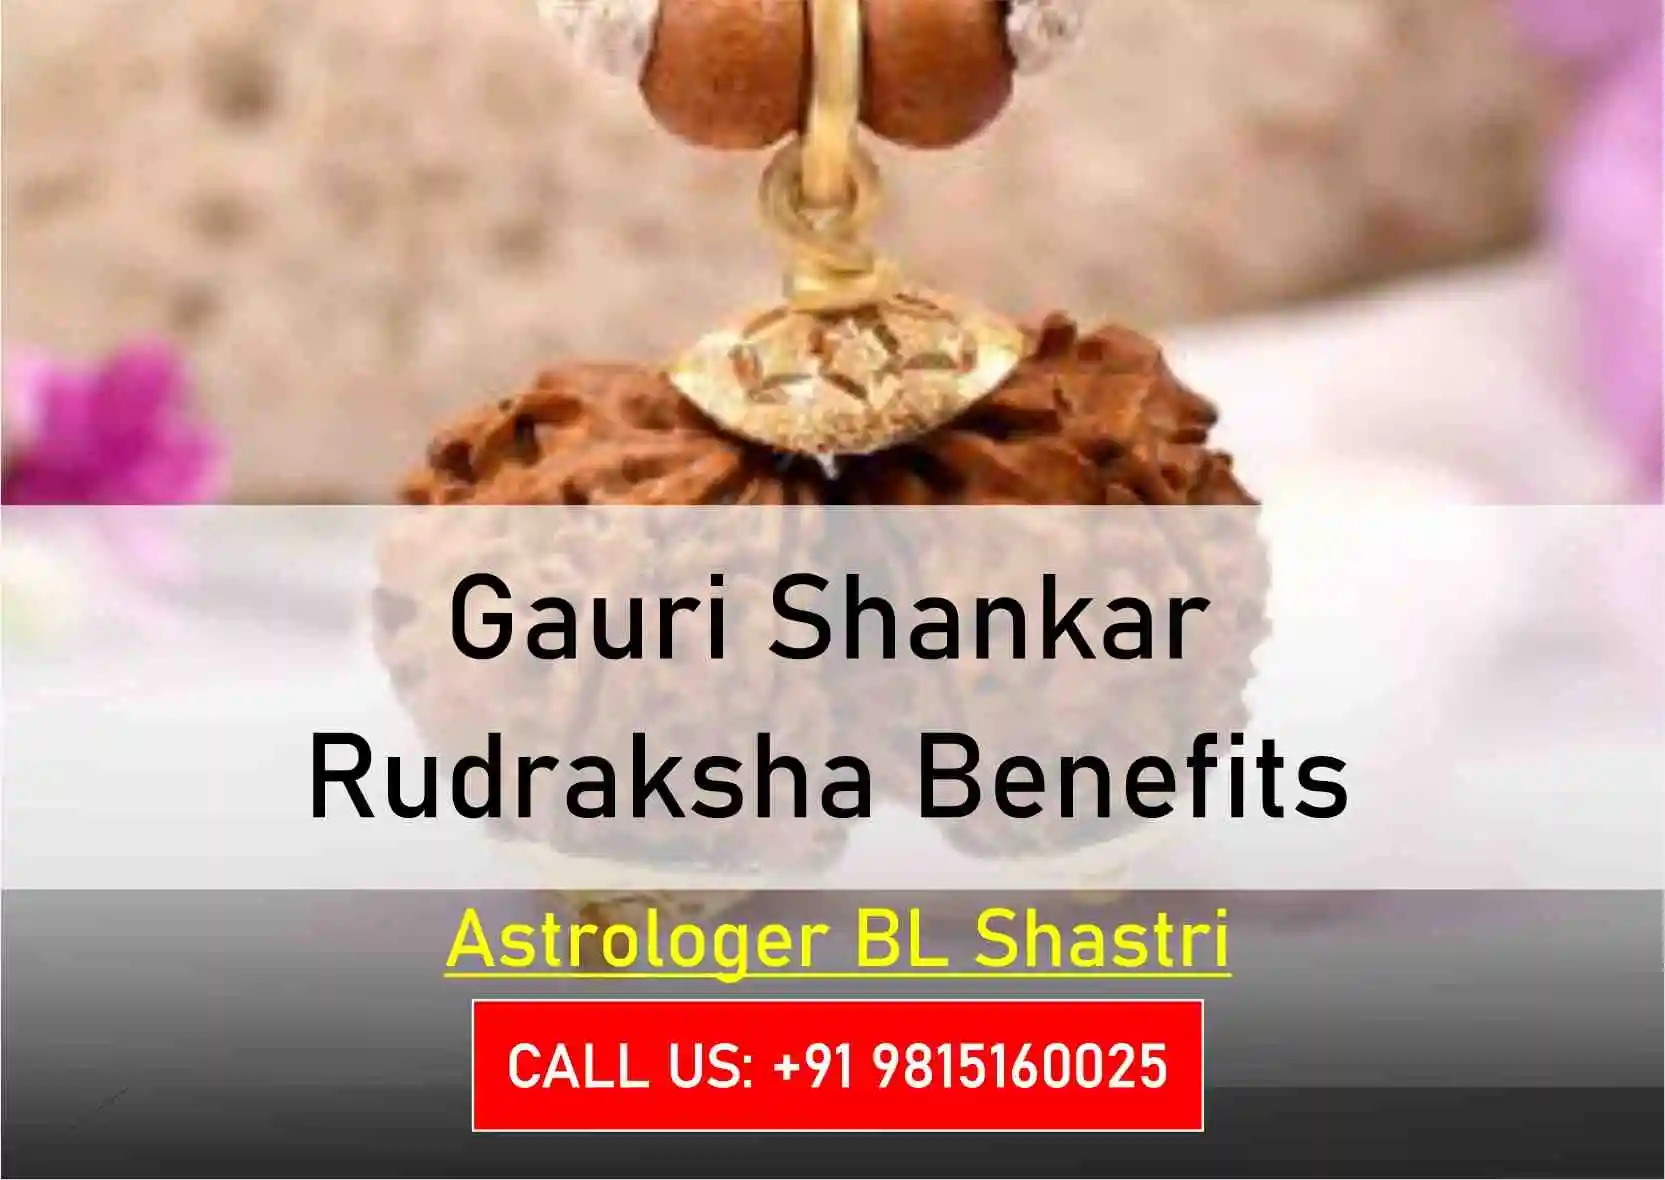 Gauri Shankar Rudraksha Benefits